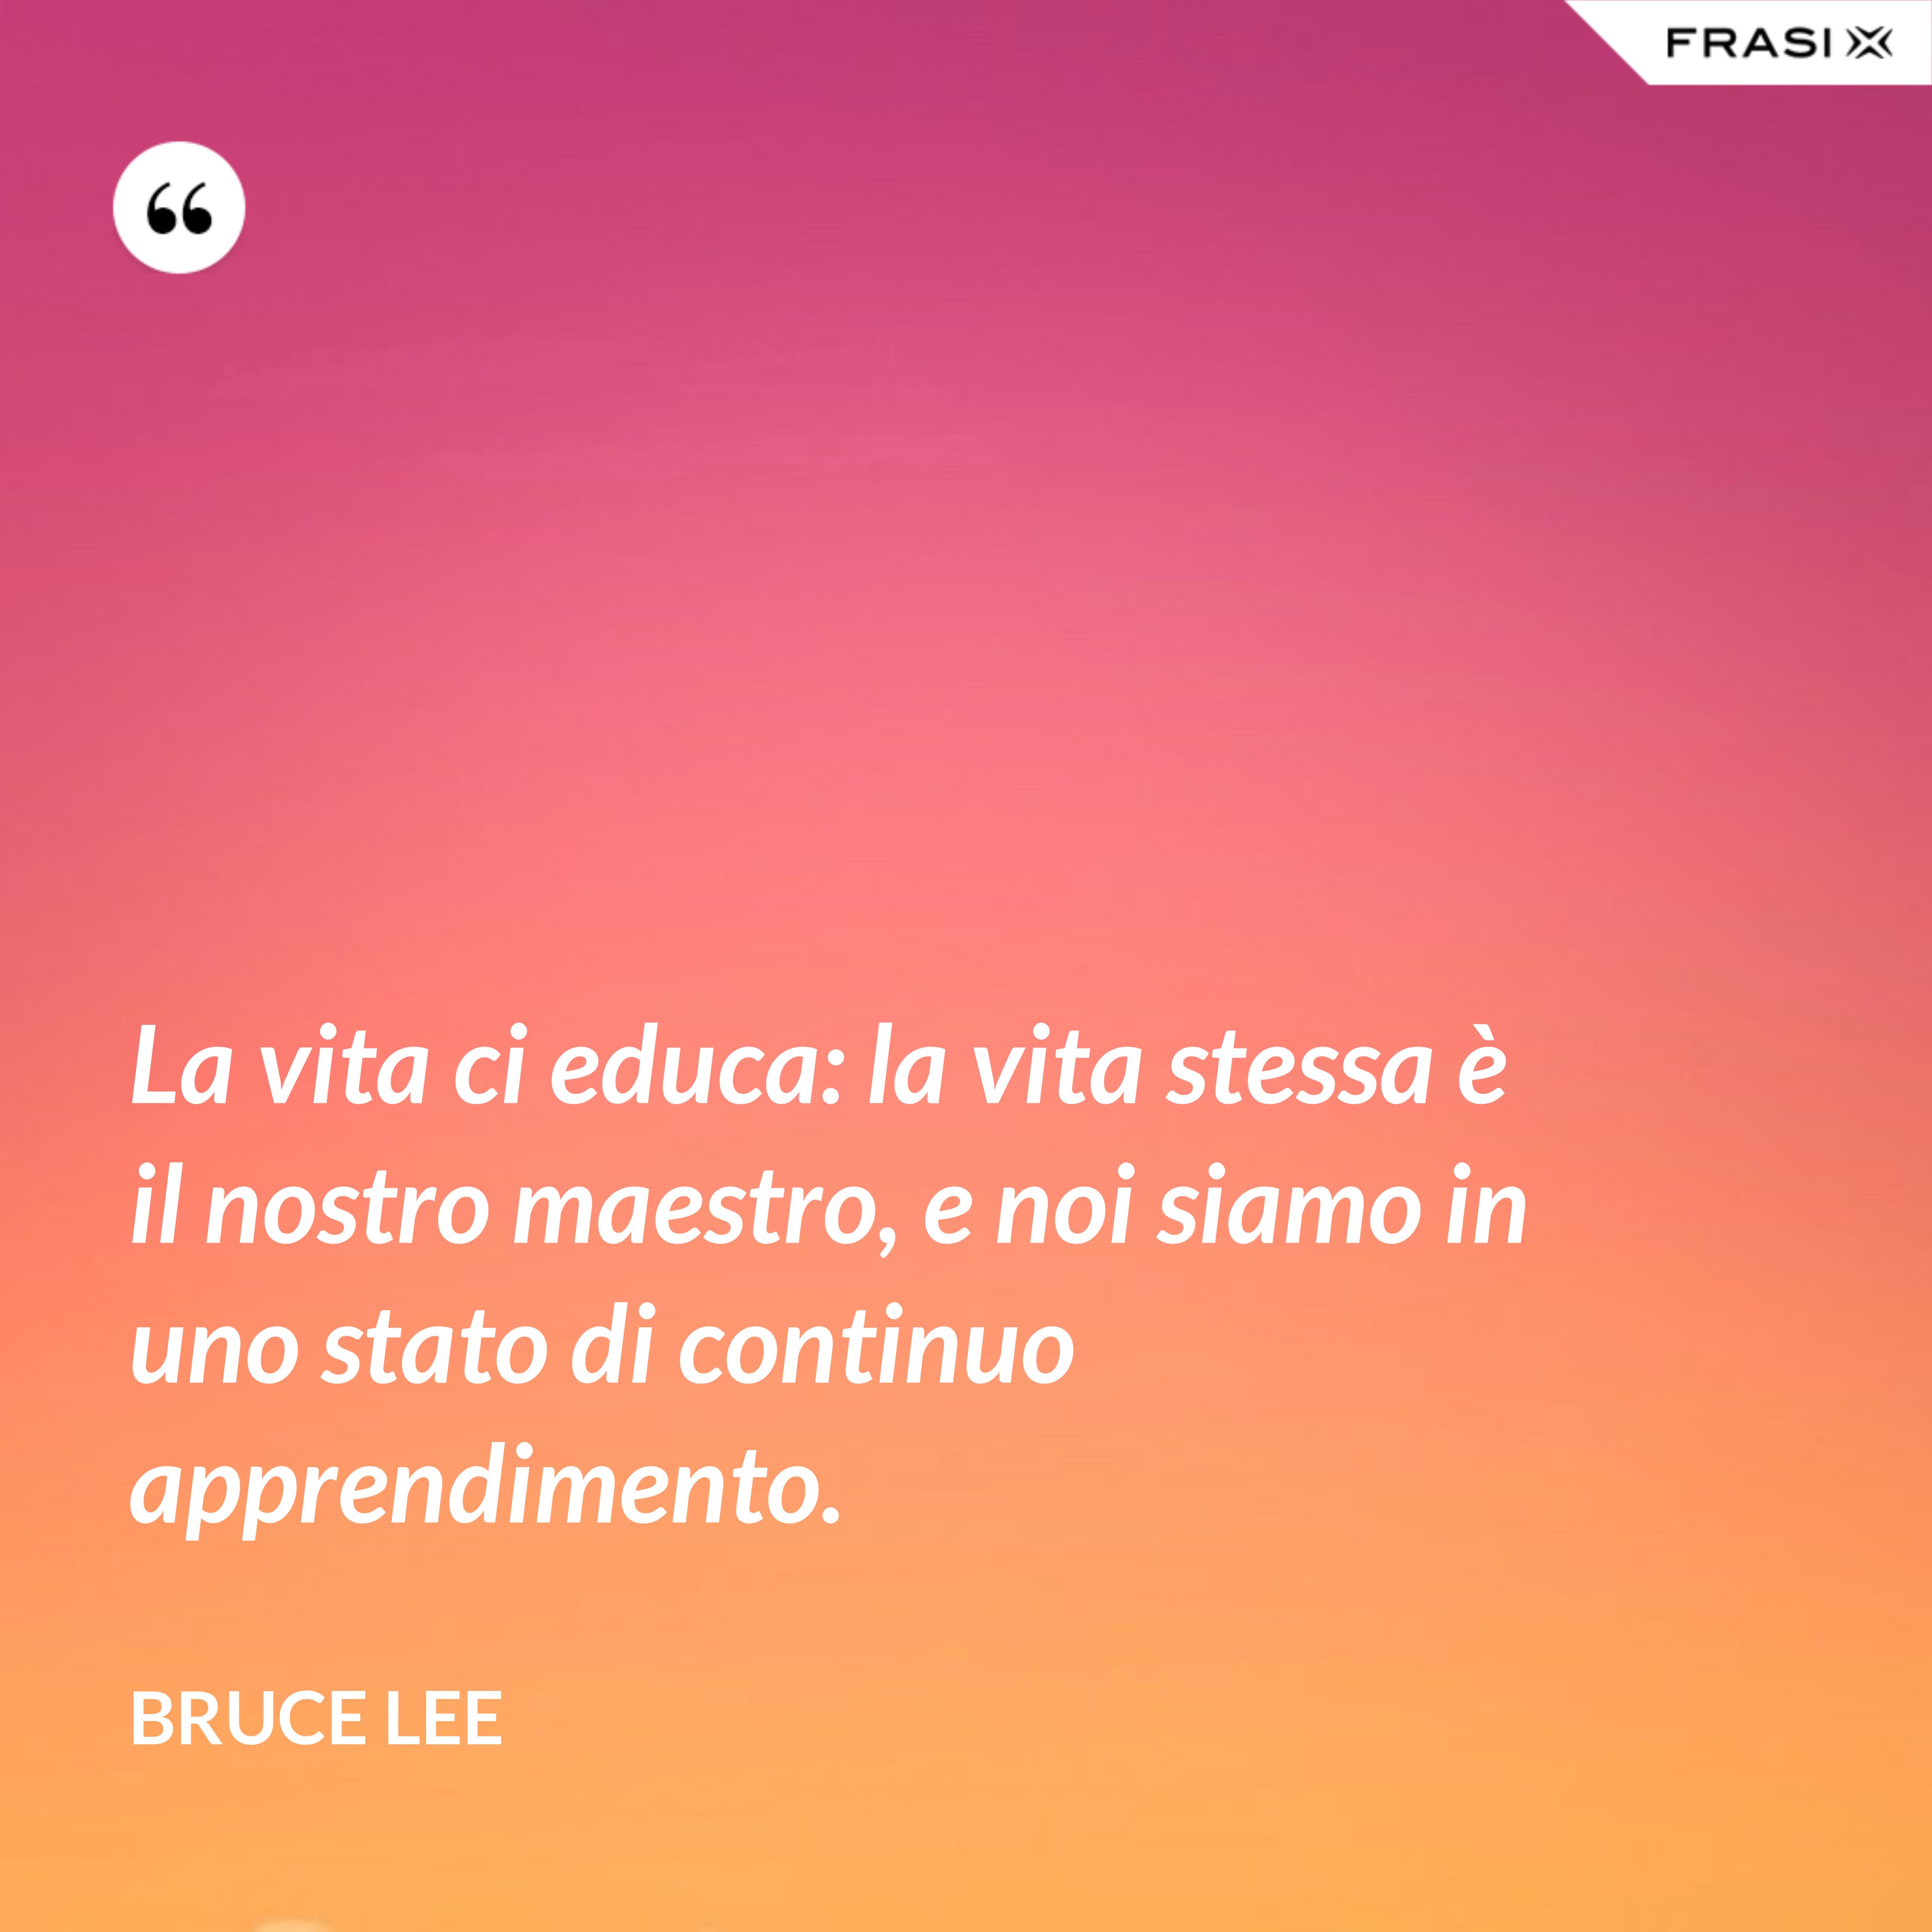 La vita ci educa: la vita stessa è il nostro maestro, e noi siamo in uno stato di continuo apprendimento. - Bruce Lee